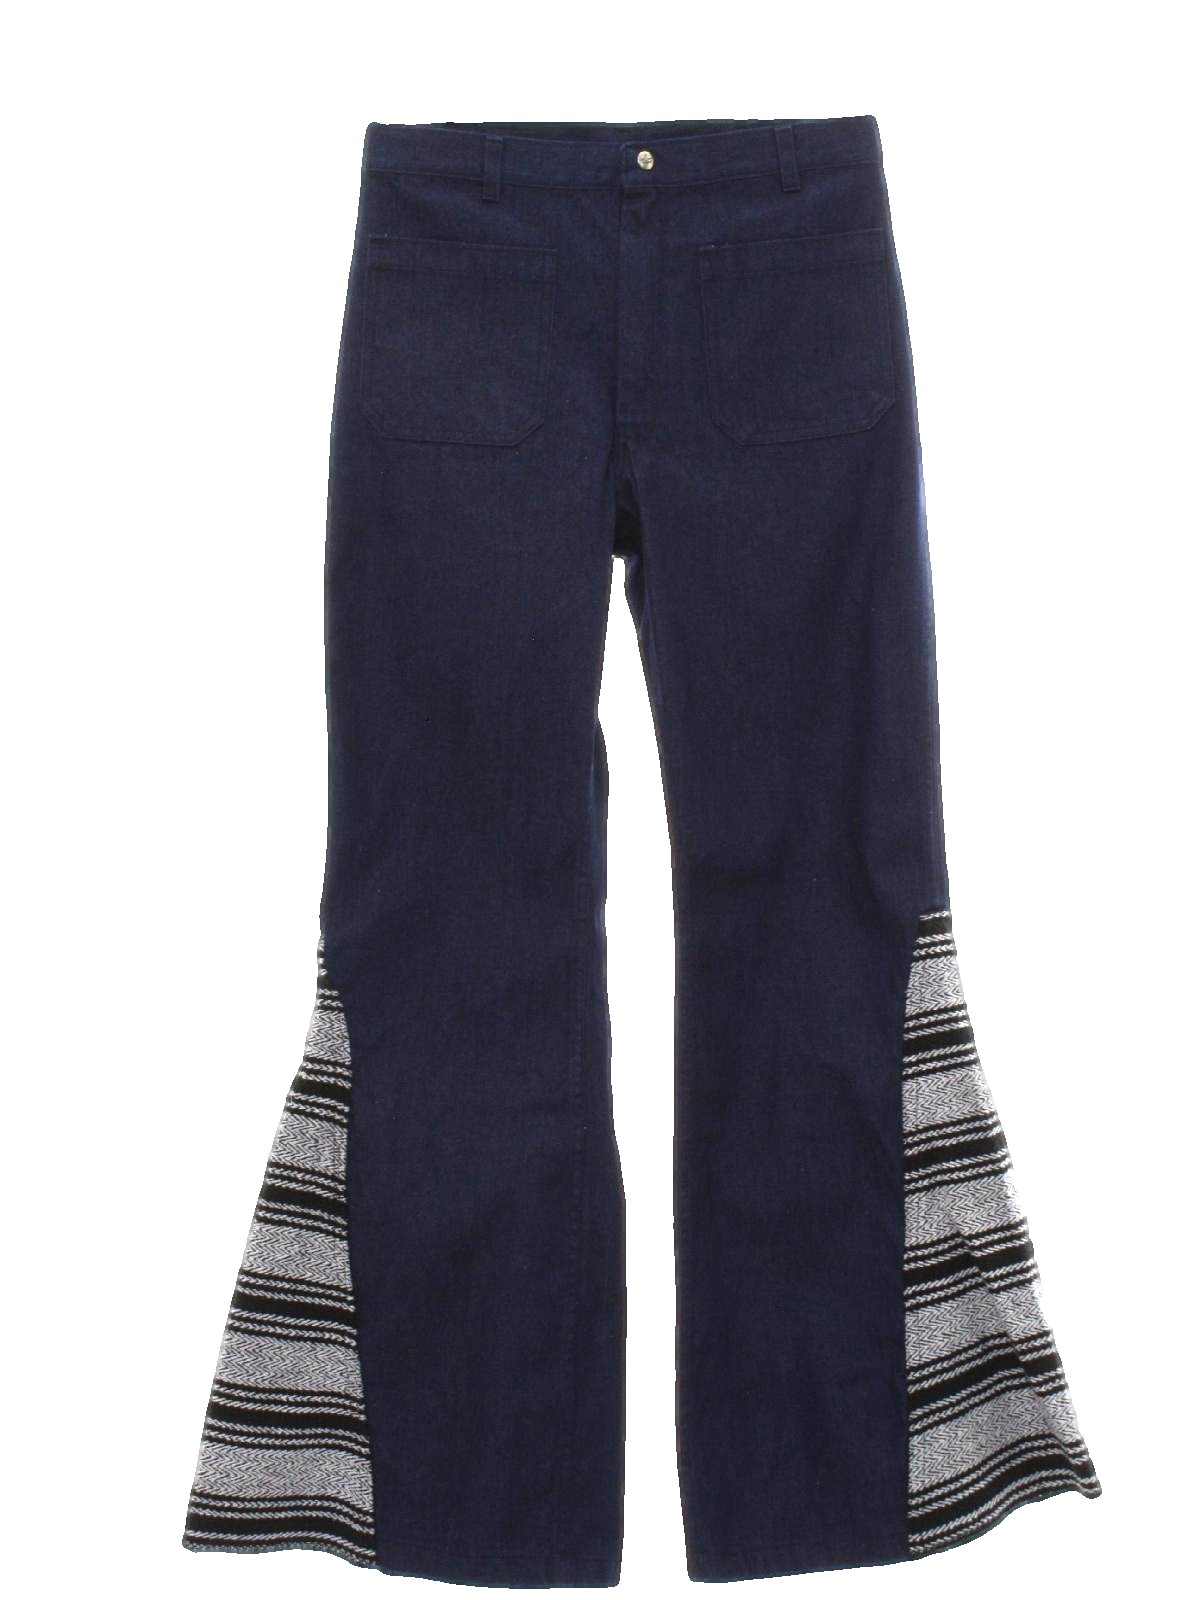 Vintage 1970's Bellbottom Pants: 70s style -Seafarer- Mens dark blue ...